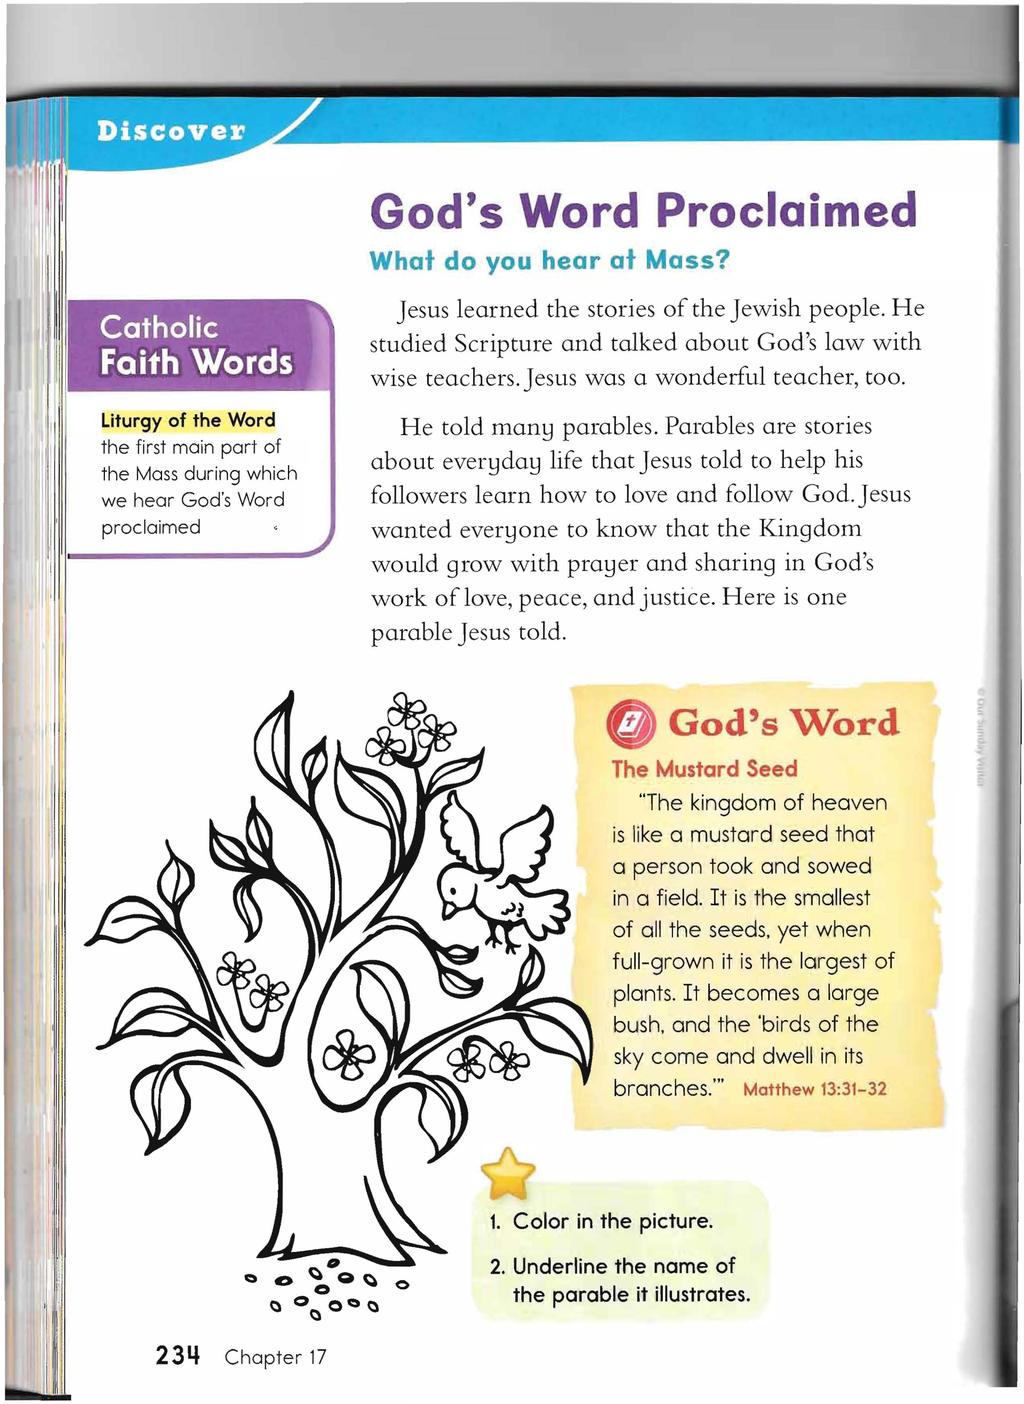 God's Word Proclaimed What do you hear at Mass?. \. Catholic Faith 'Words, ~.... ~ -.-.~' -, ~- ----~.;.